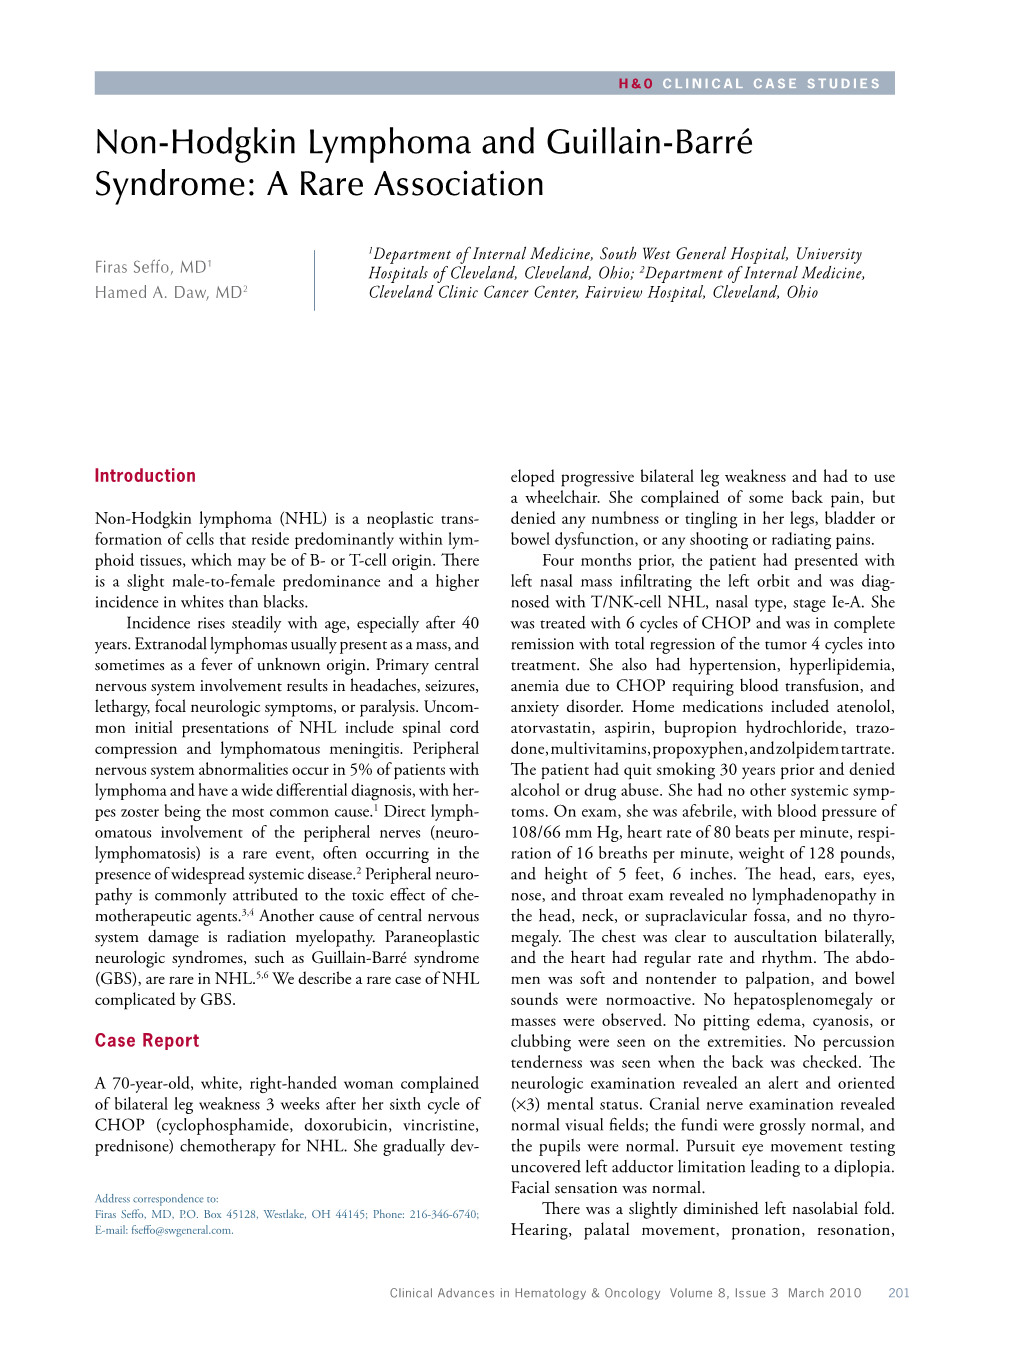 Non-Hodgkin Lymphoma and Guillain-Barré Syndrome: a Rare Association